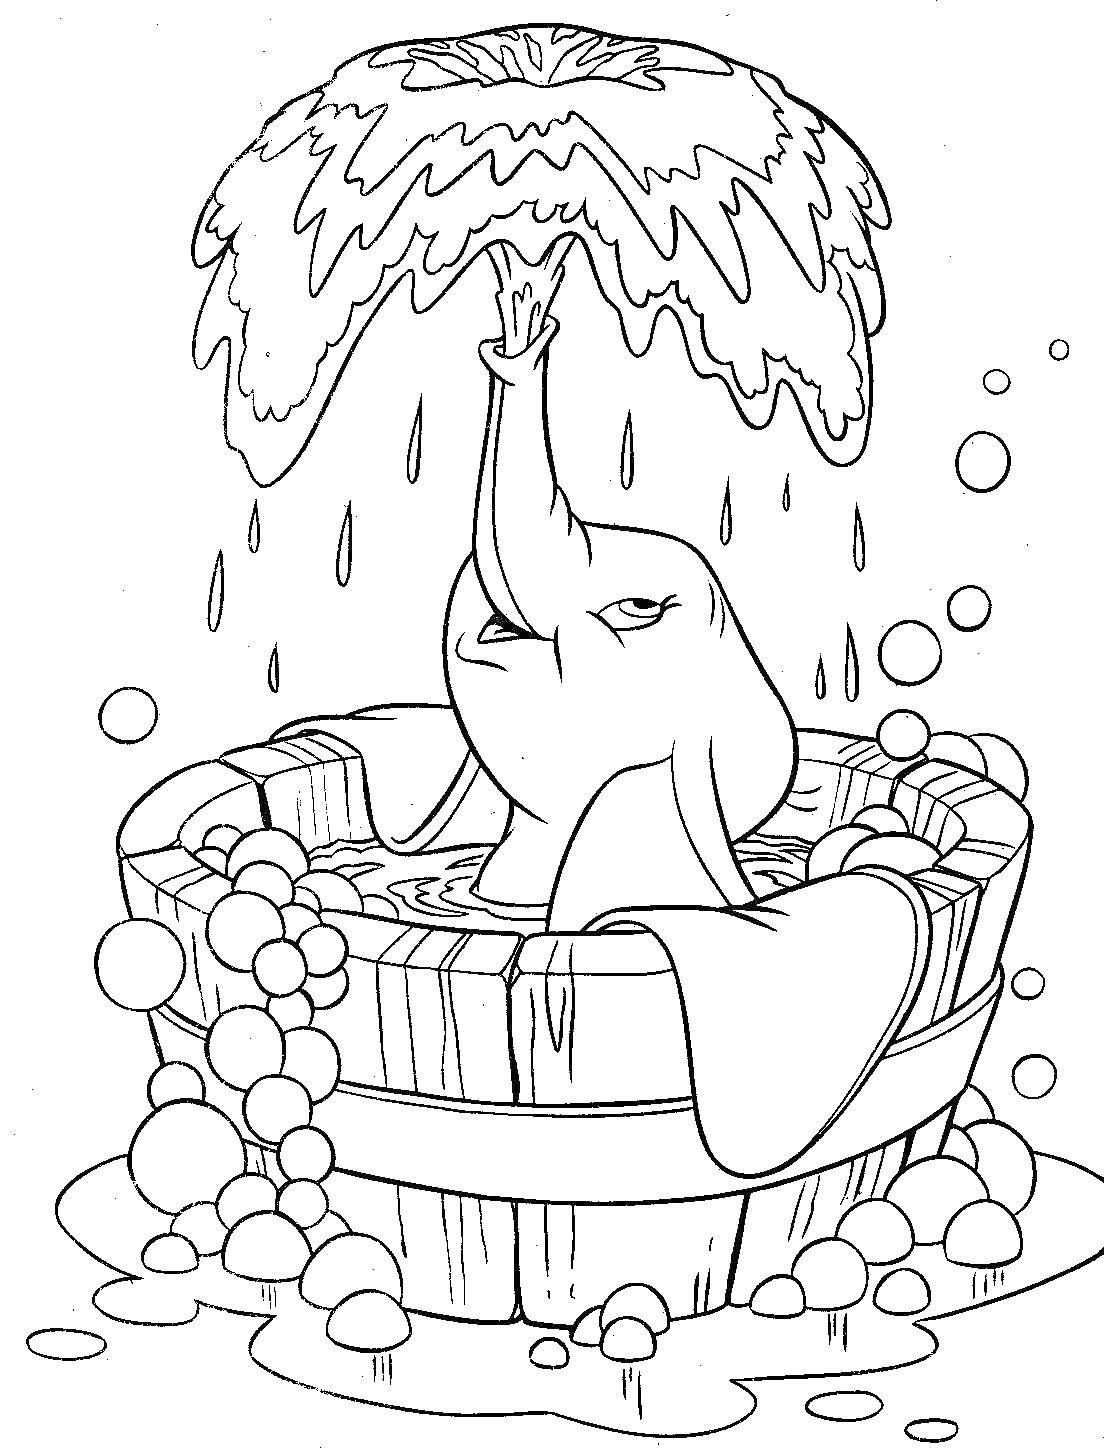 Раскраска Слонёнок Дамбо принимает ванну в ведре с мыльными пузырями и водой, которую он поднимает хоботом